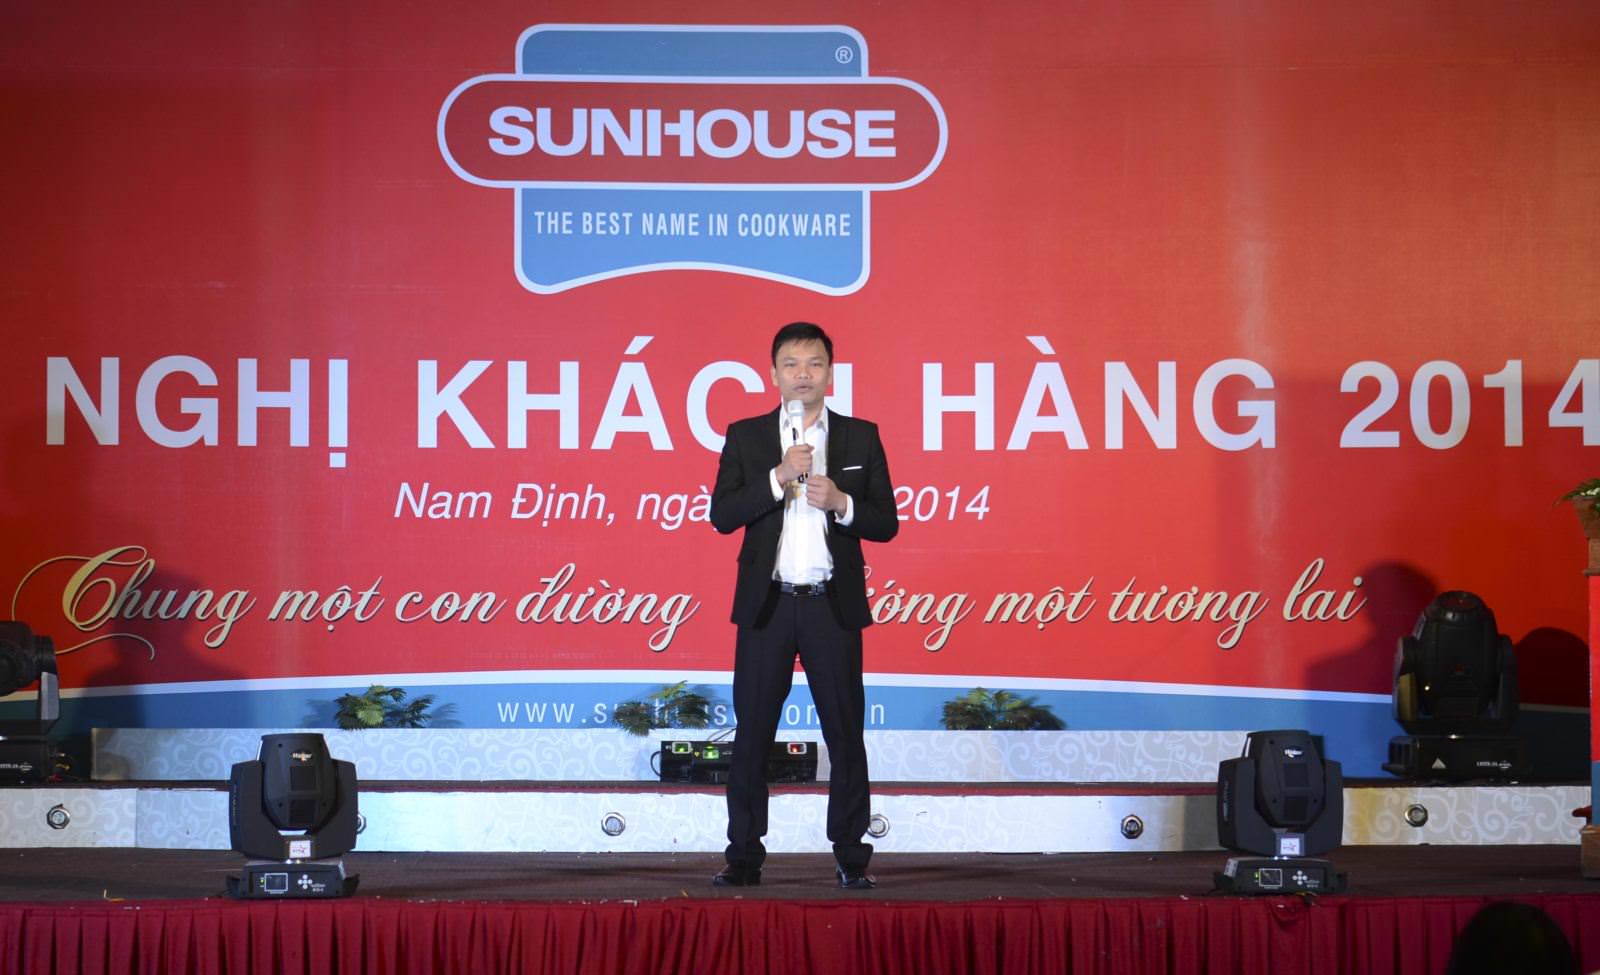 Hội nghị khách hàng Sunhouse tại Nam Định 2014: Chung một con đường – Hướng một tương lai 3